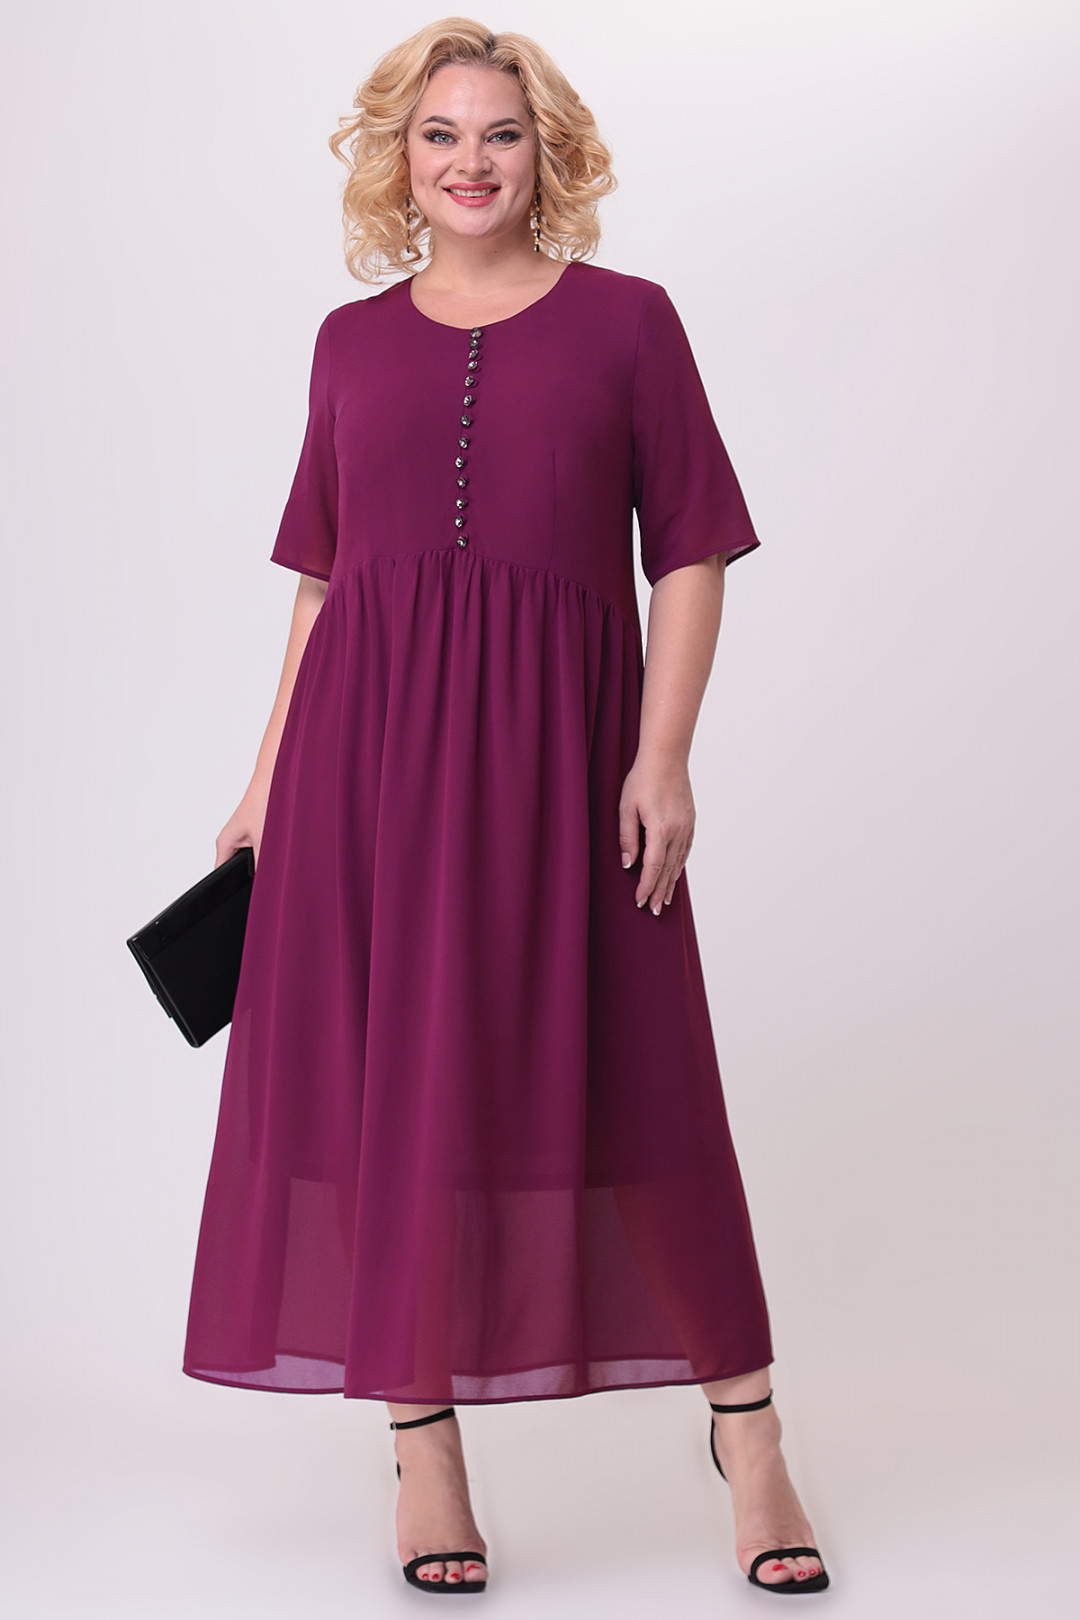 Платье ALGRANDA (Новелла Шарм) A3883-8-5